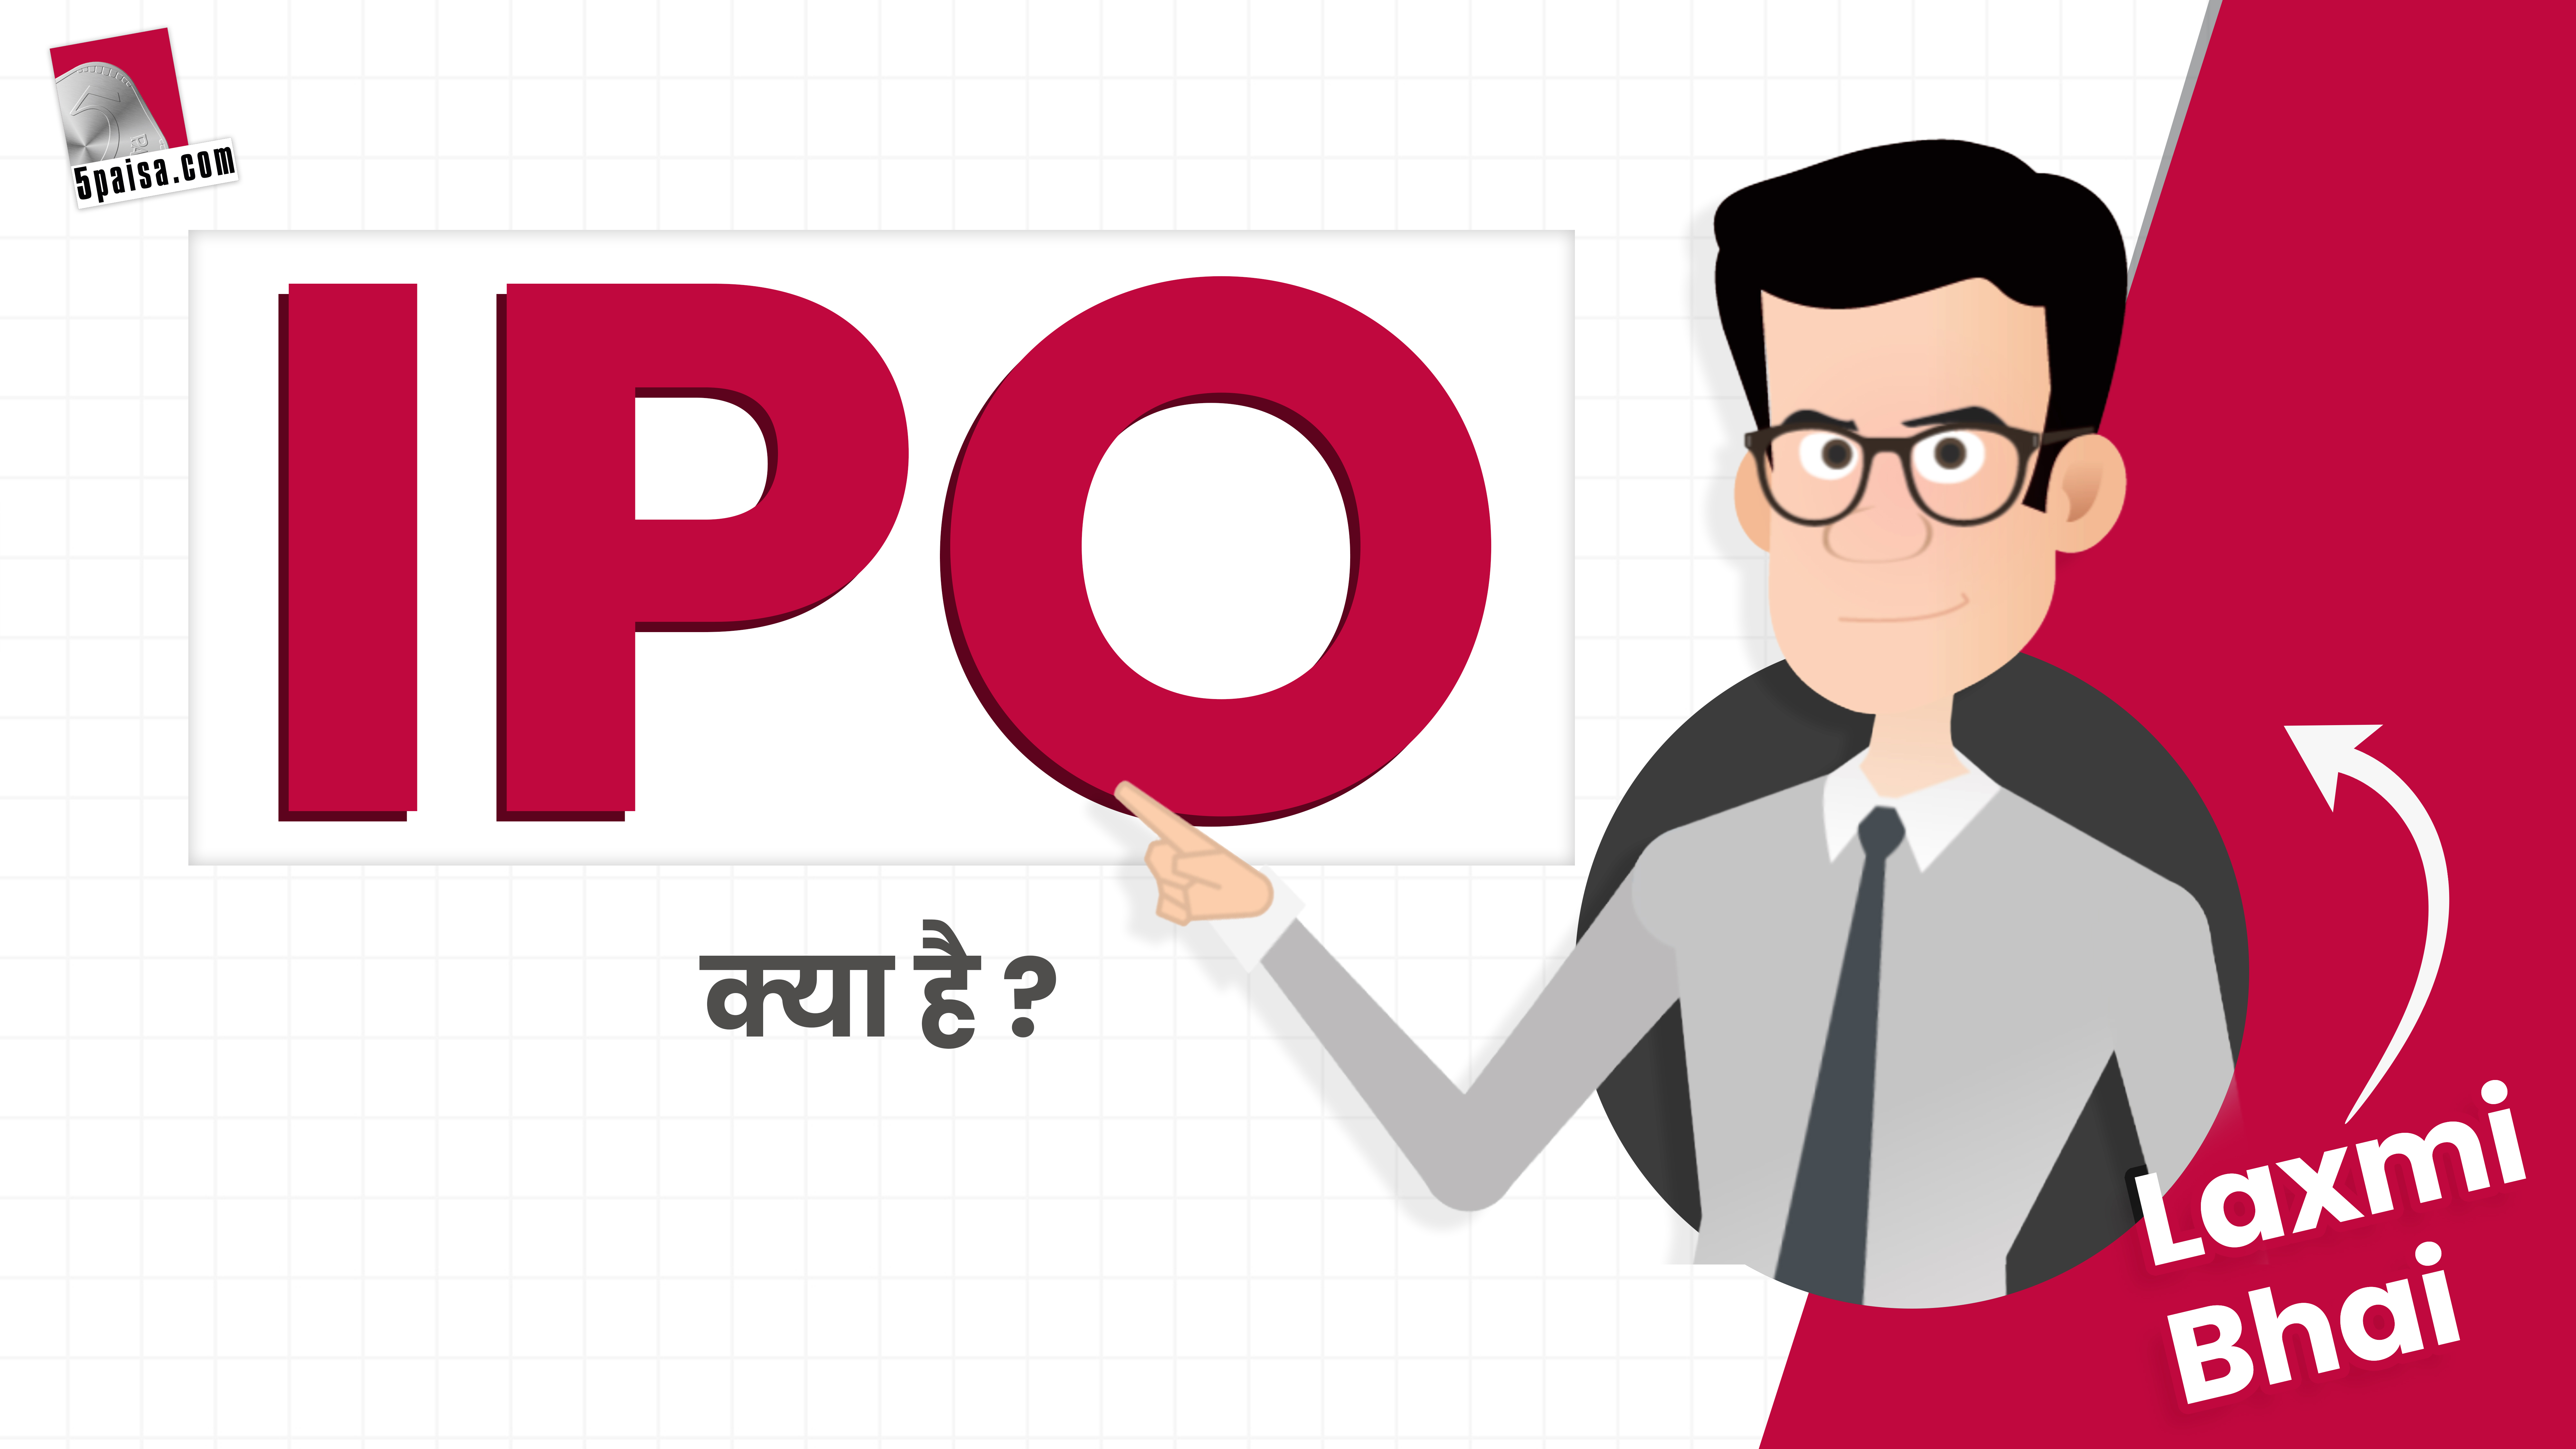 Laxmi Bhai से जानिए, IPO (Initial Public Offering) क्या है?